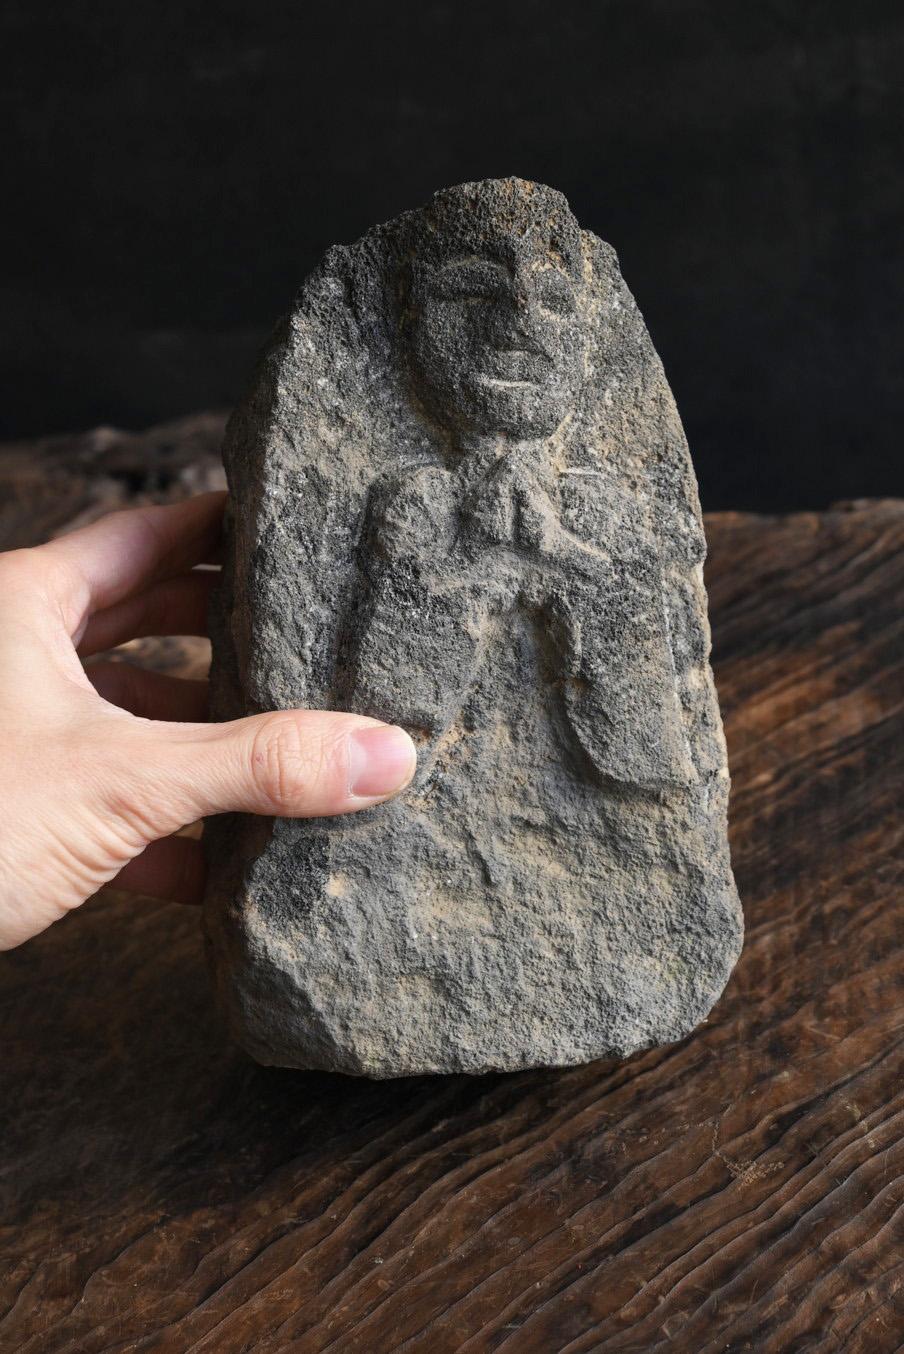 Dies ist ein kleiner Steinbuddha, der nach der Mitte der Edo-Zeit in Japan hergestellt wurde.
Es handelt sich um eine Art Buddha-Statue, die in Japan Jizo genannt wird und zu den Bodhisattvas in der Welt des Buddhismus gehört.
Es ist ein Wesen, das